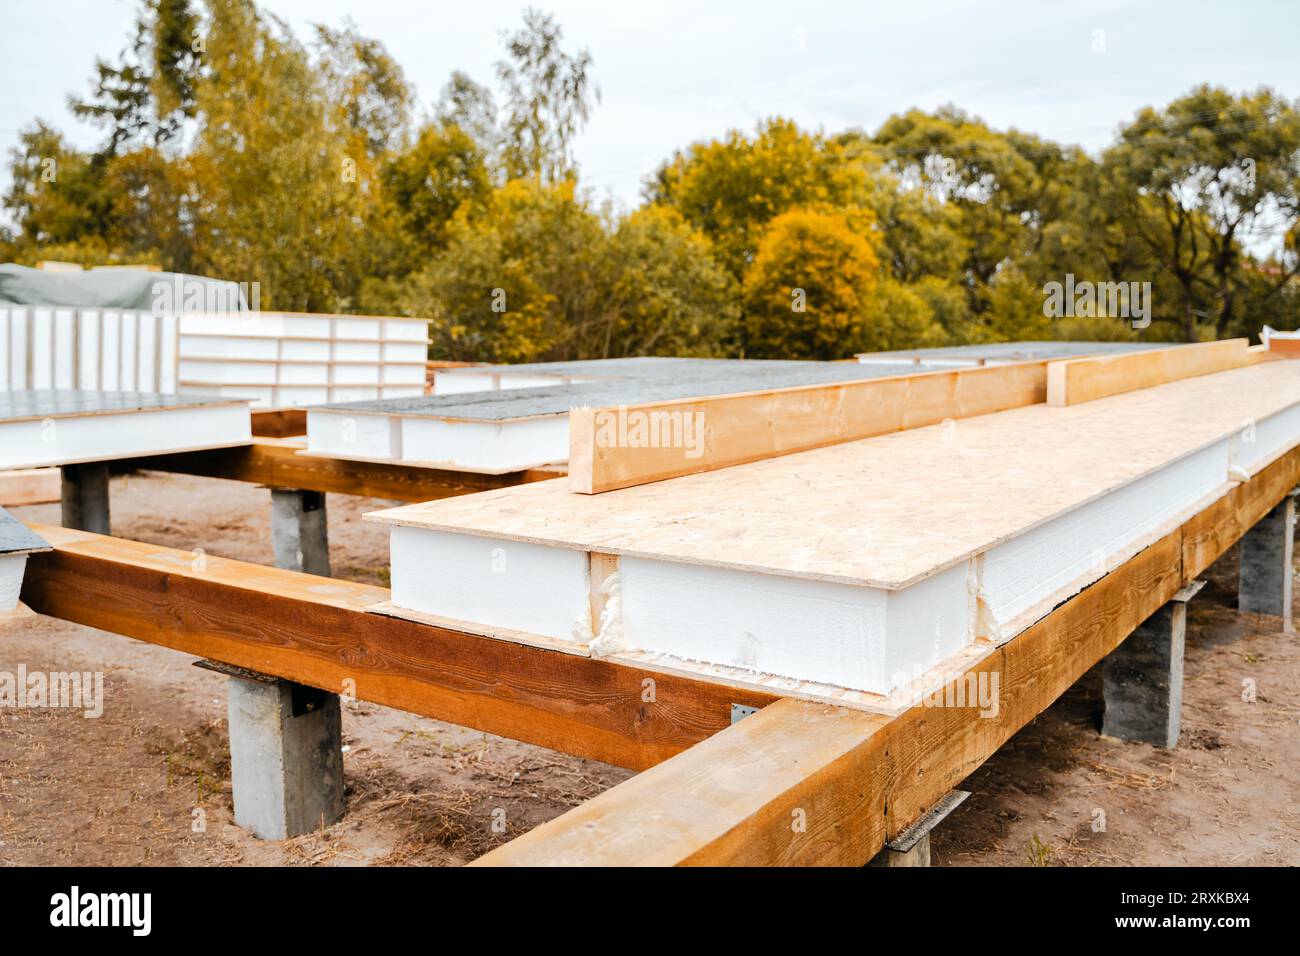 Costruzione di case con telaio in legno realizzate con pannelli isolati strutturali SIP. Scheda per trefoli orientata OSB, polistirene espanso EPS. Energia-effica Foto Stock